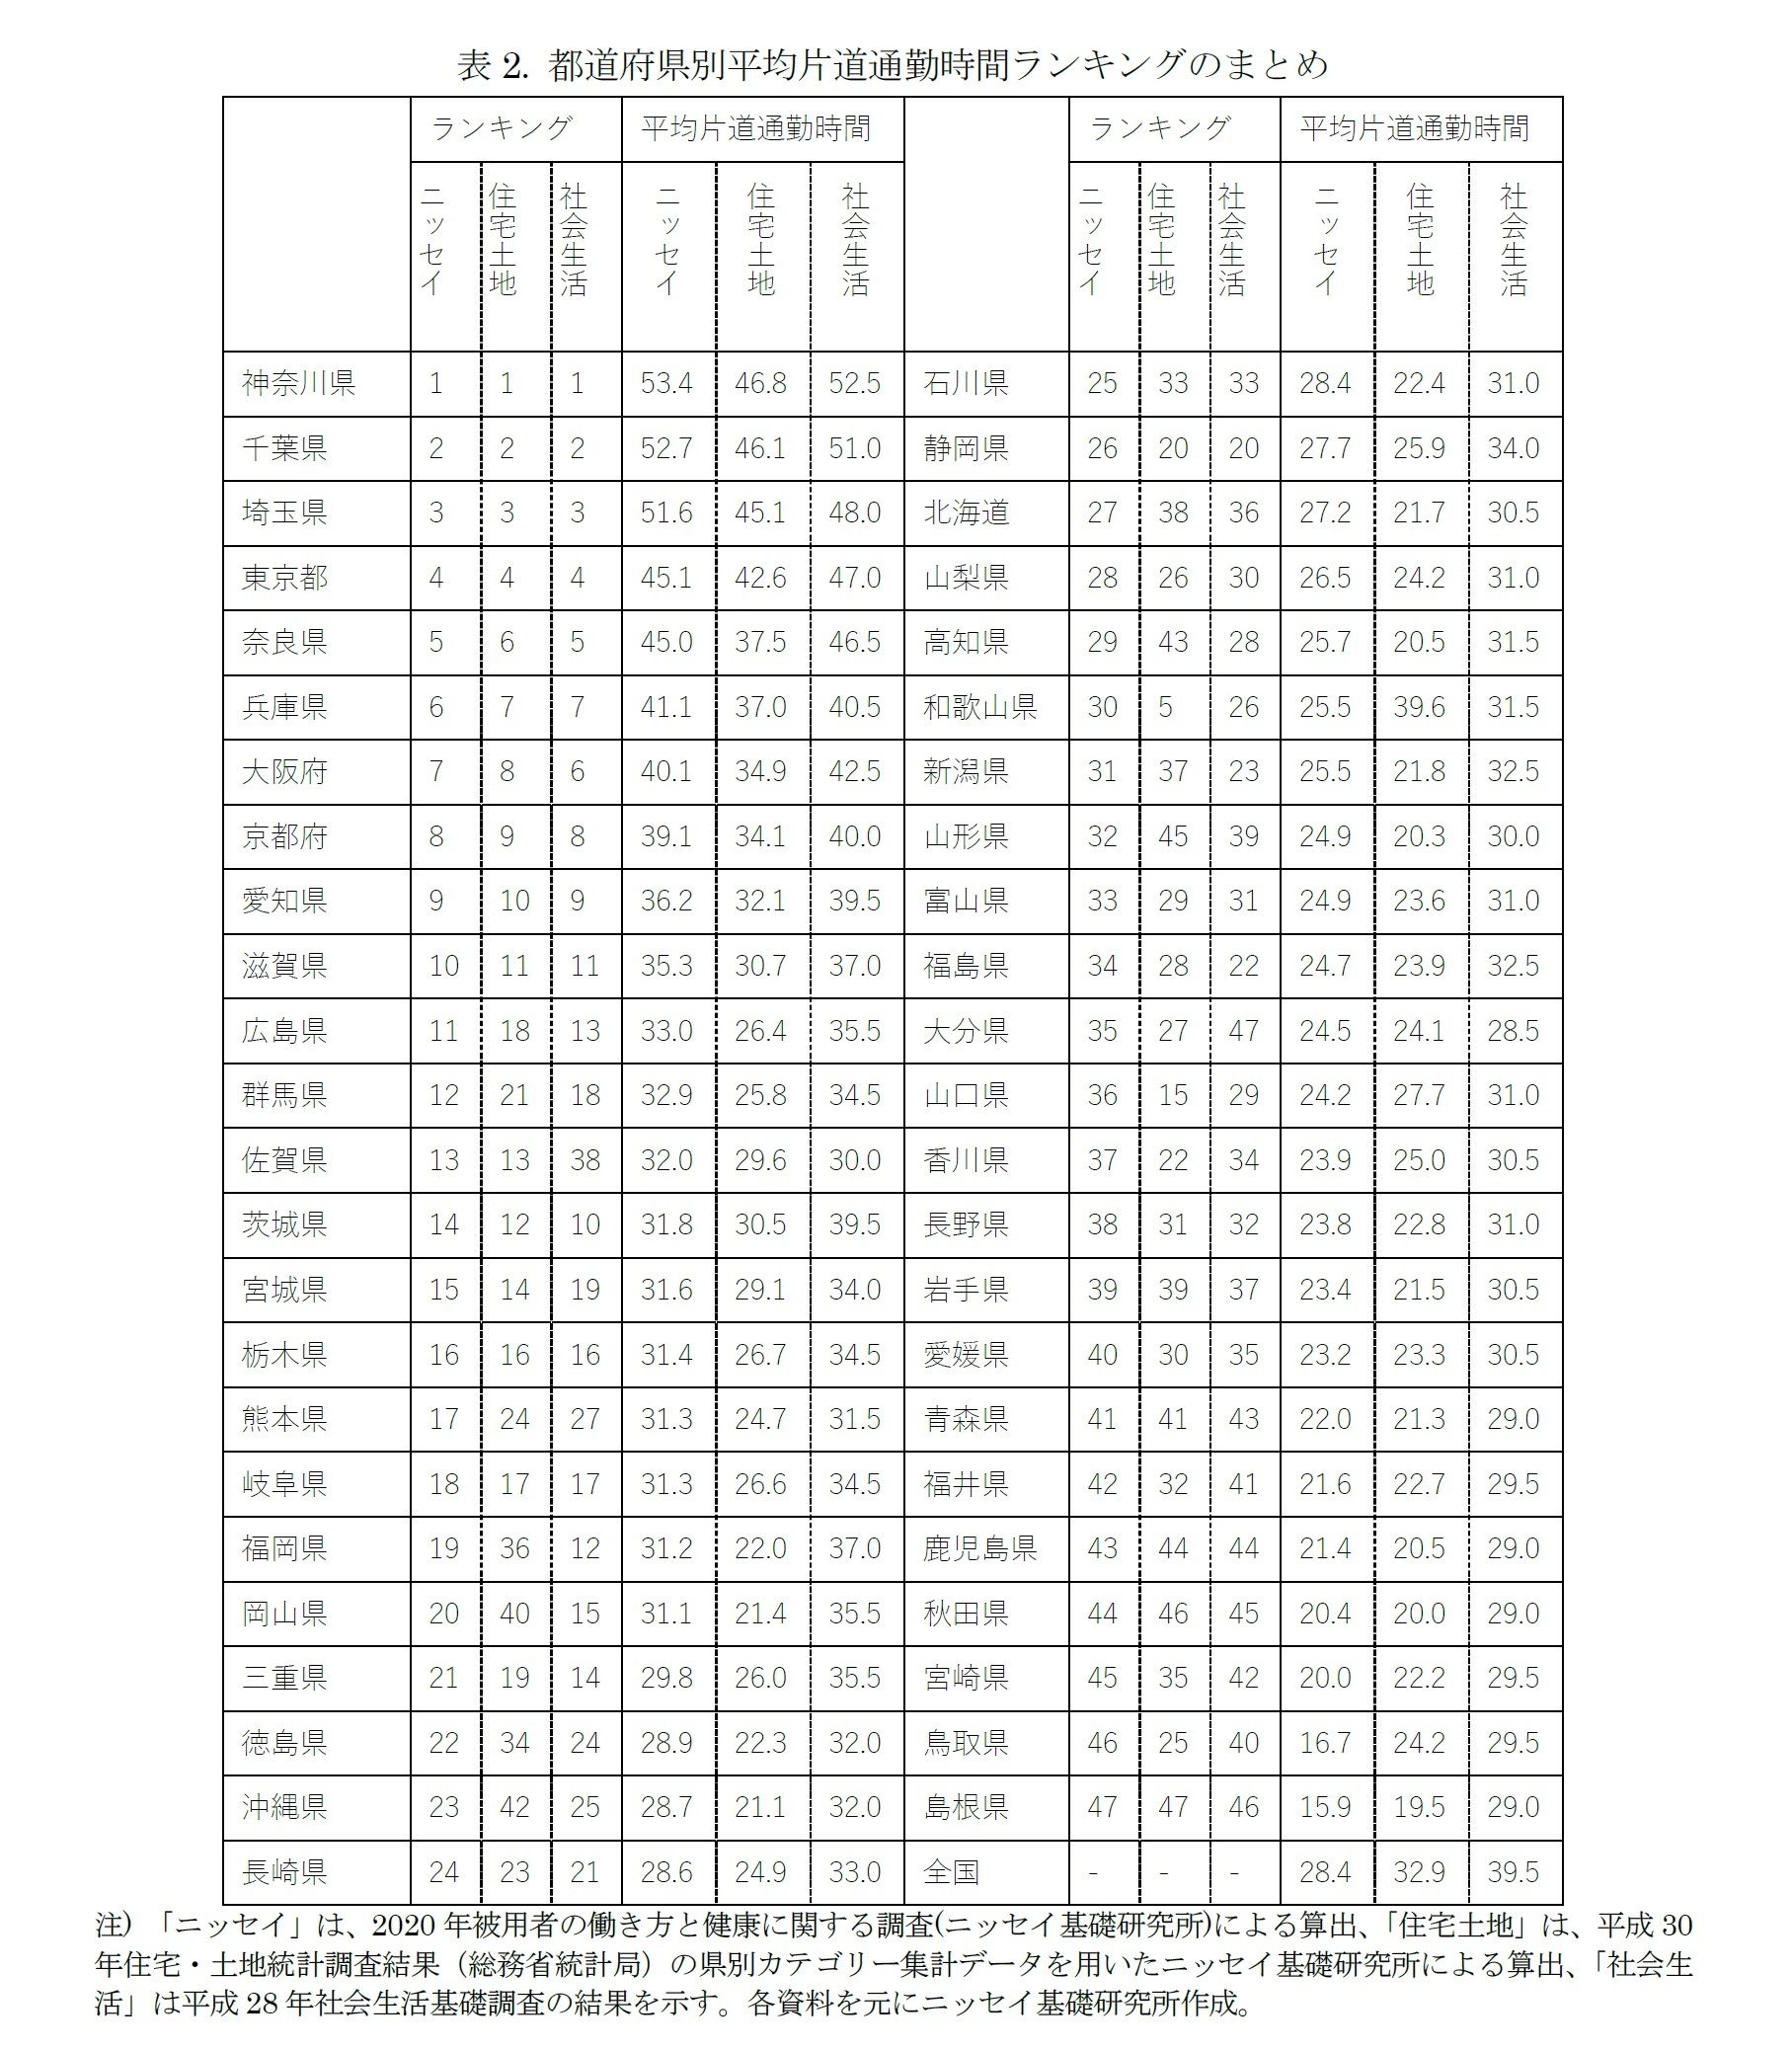 表2. 都道府県別平均片道通勤時間ランキングのまとめ